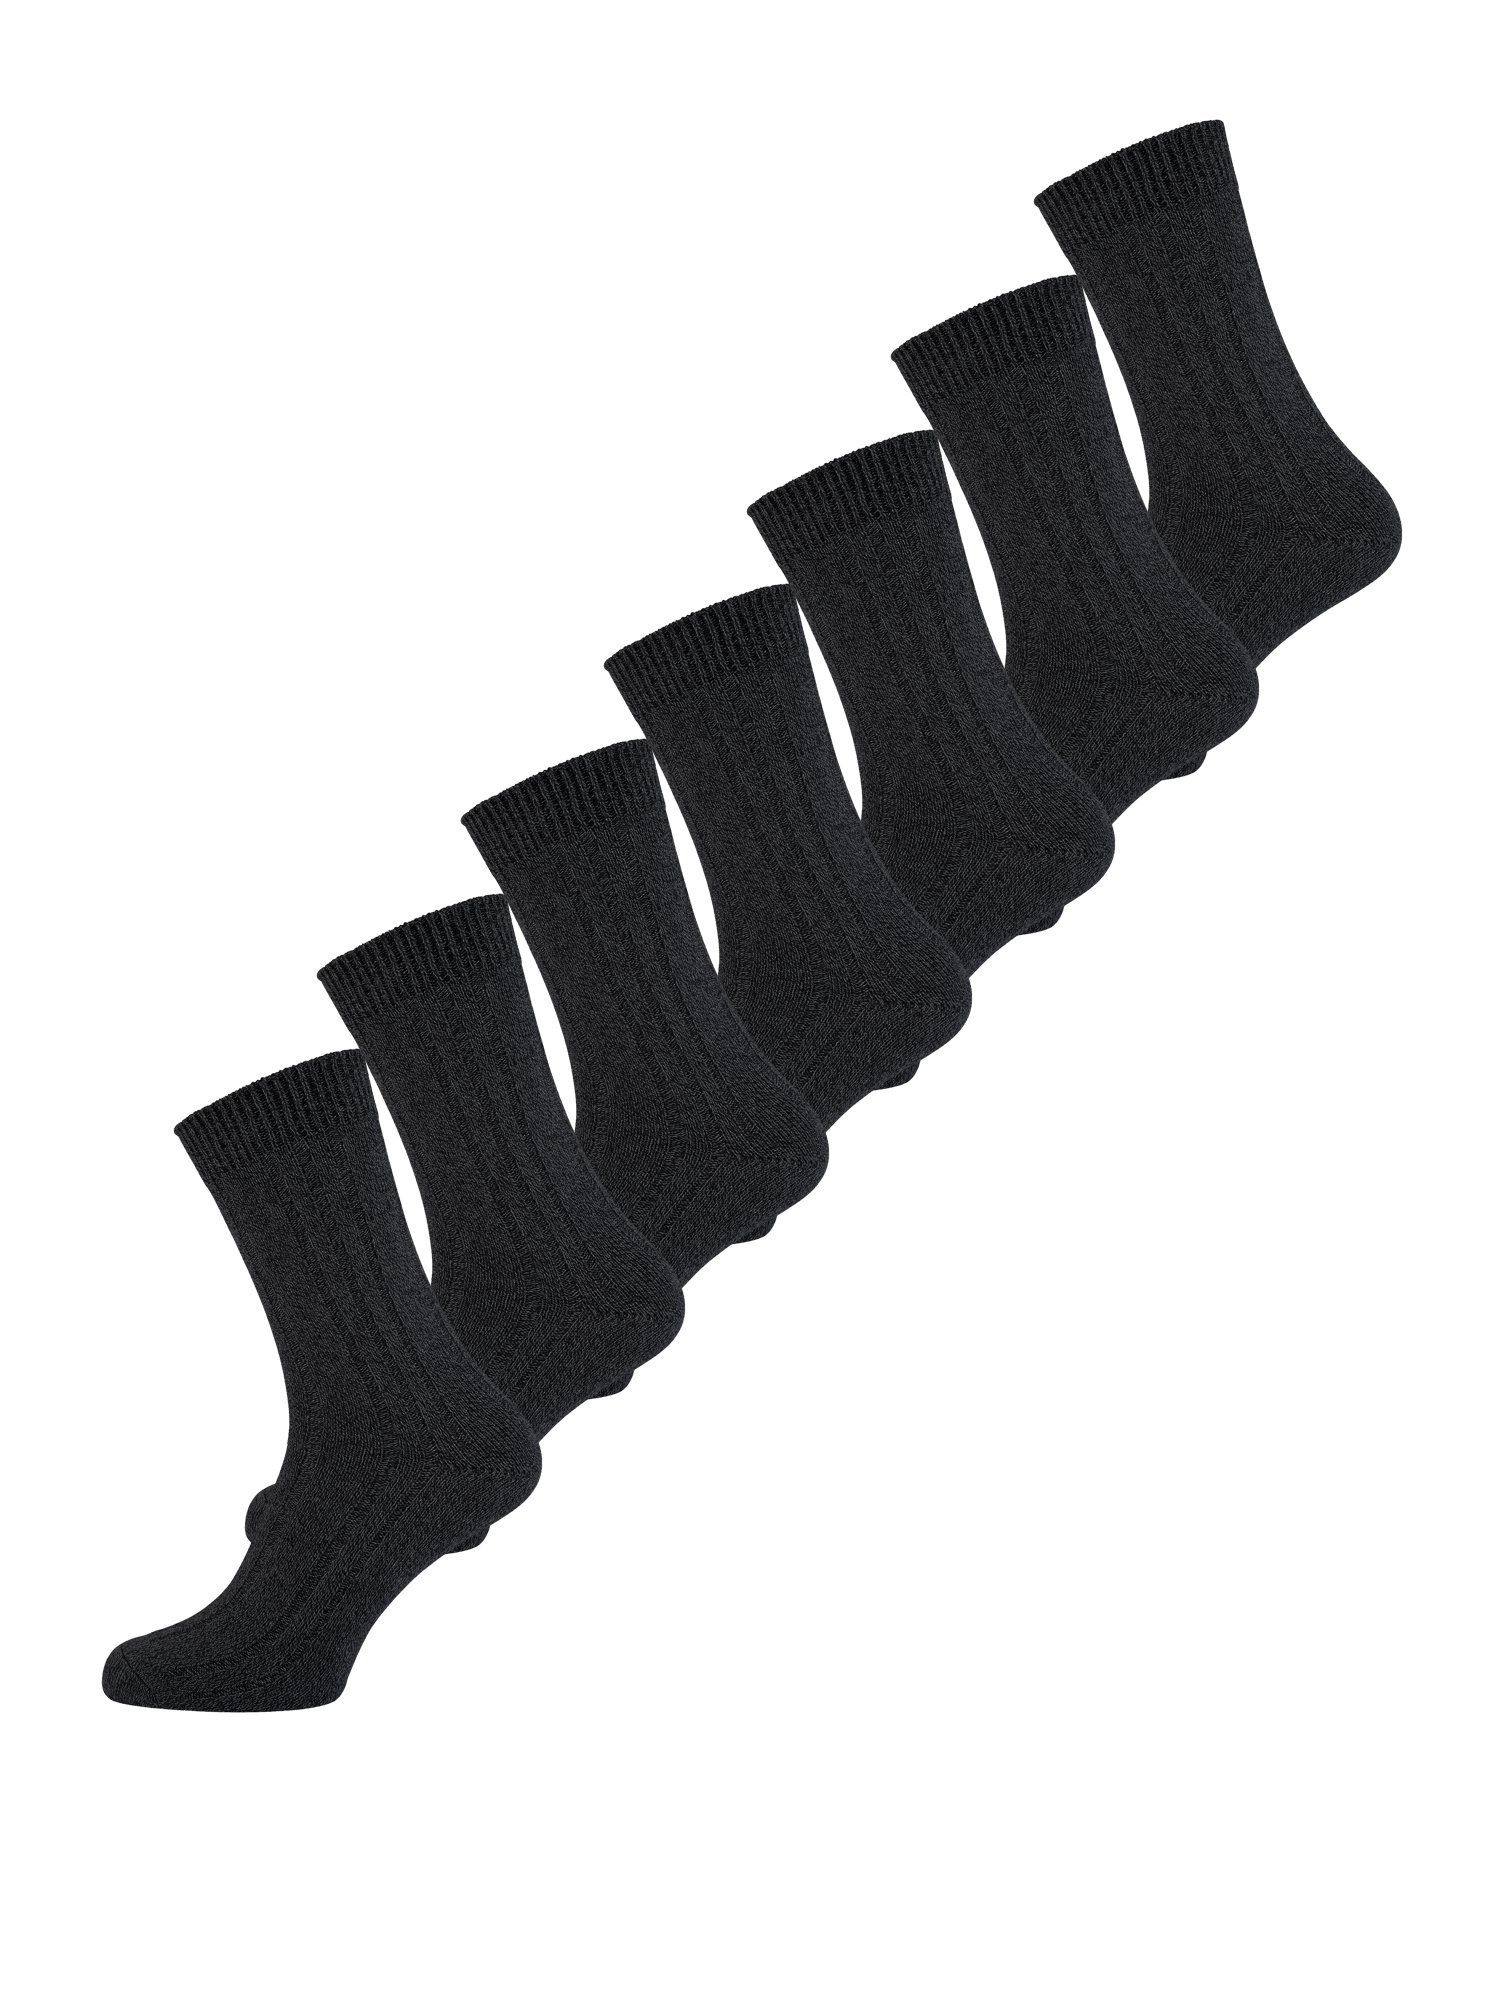 Socken schwarz Socke günstig Basicsocken Der Nur uni Warme (7-Paar)